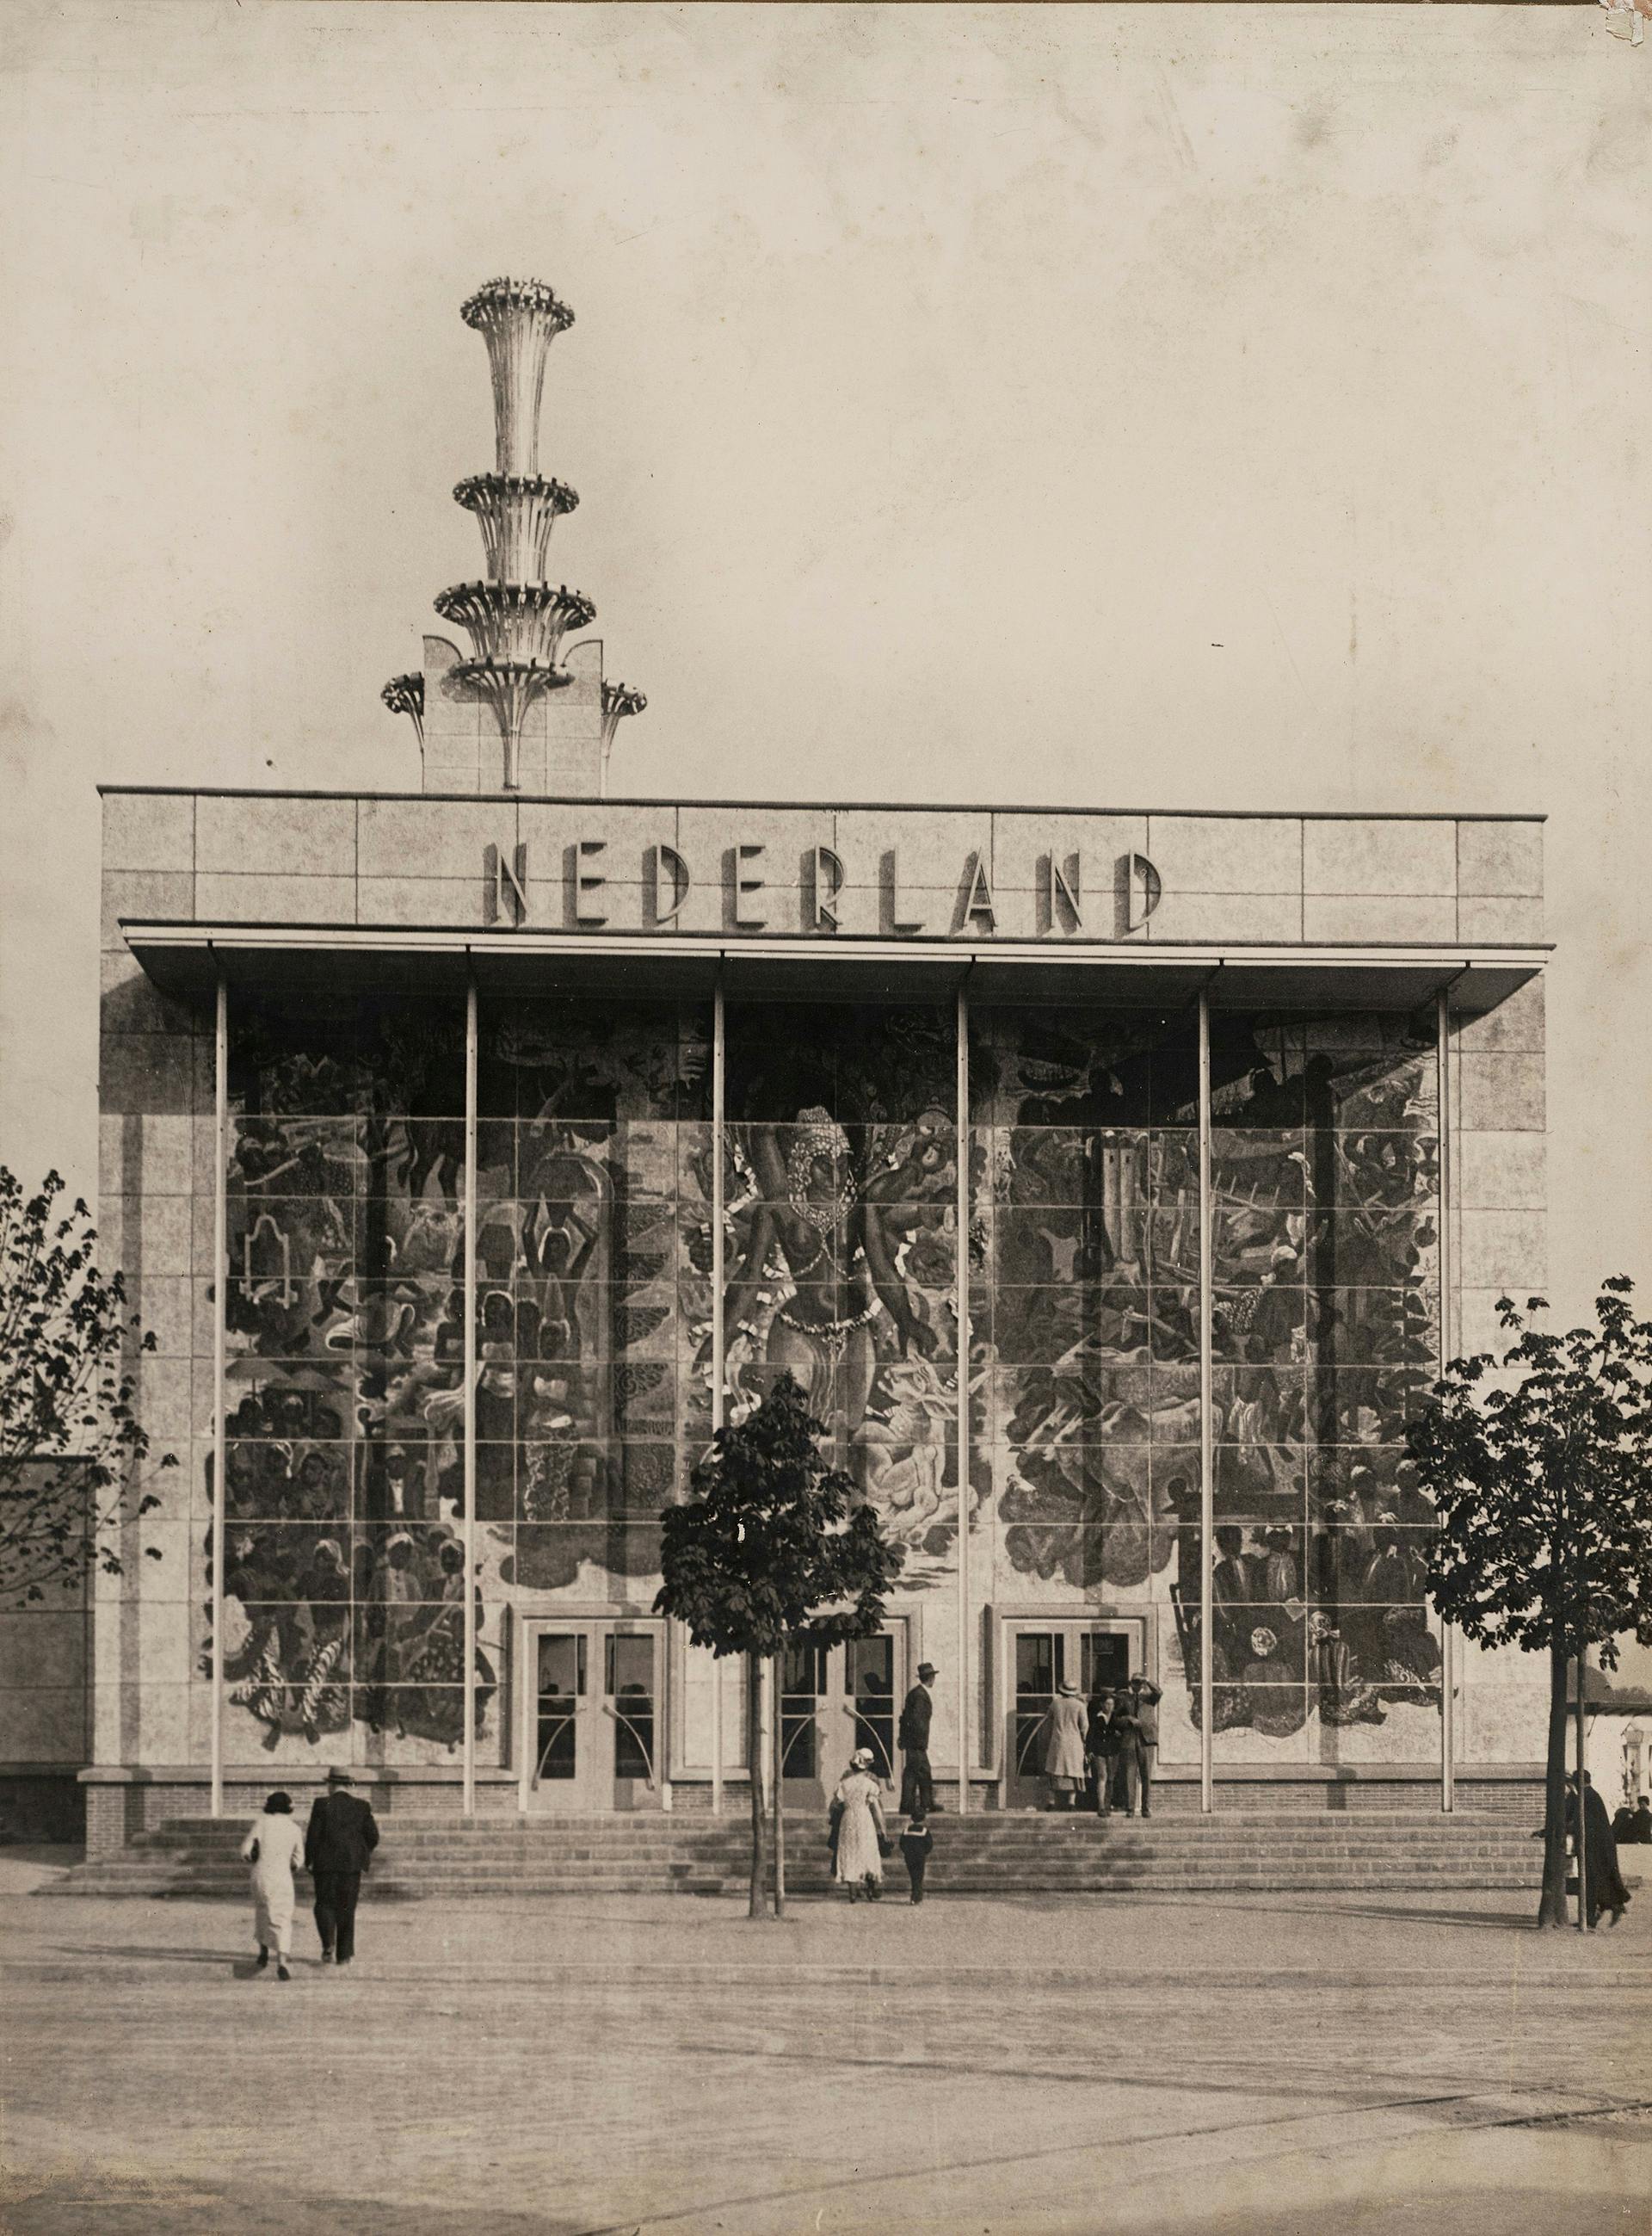  Nederlands paviljoen Wereldtentoonstelling Brussel, België, 1935. Architect: D. Roosenburg. Fotograaf onbekend. Collectie Het Nieuwe Instituut. 